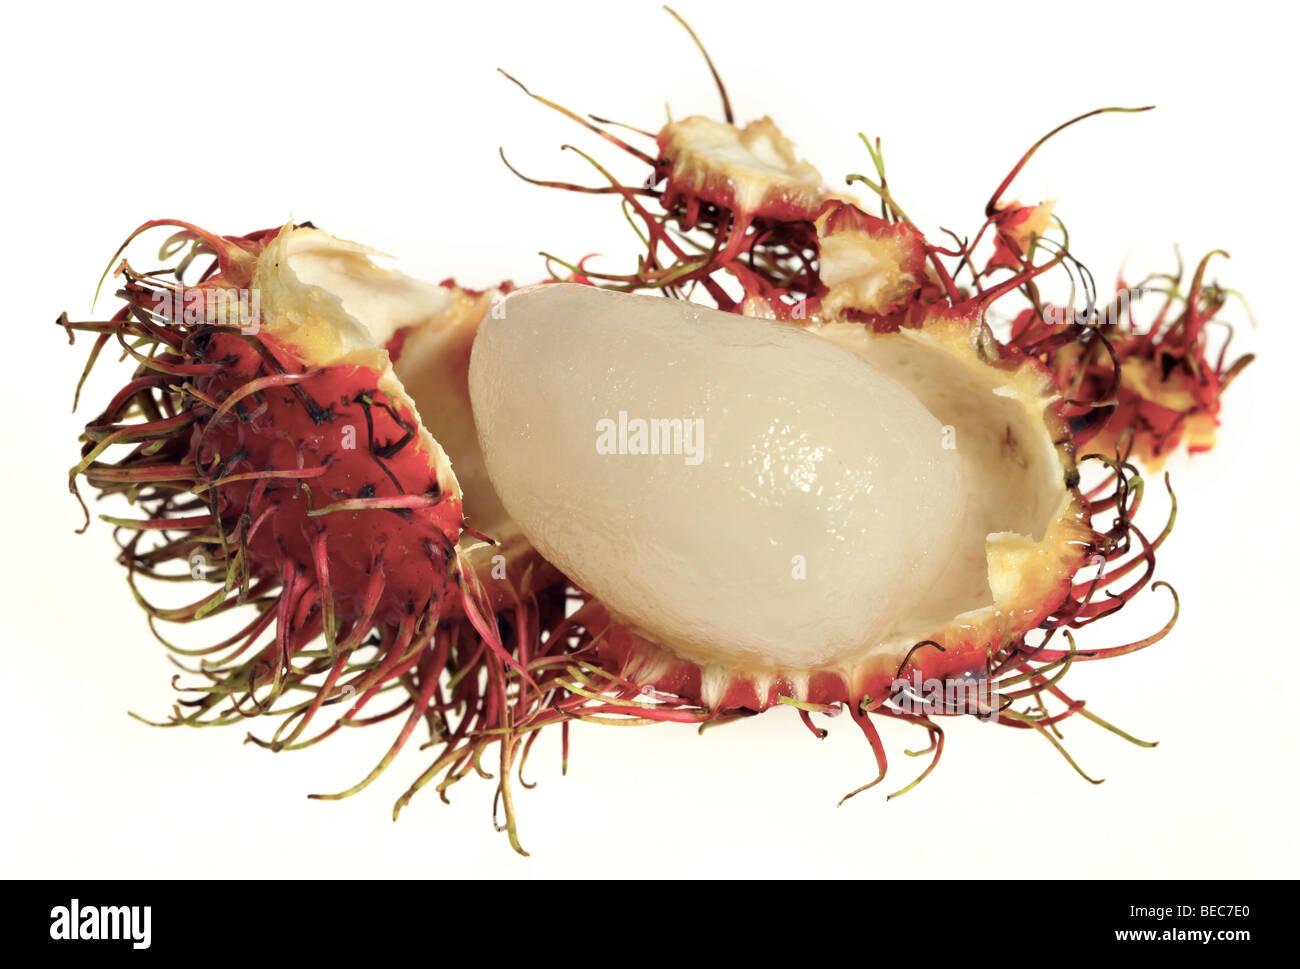 Un rambutan con il guscio pelato via per rivelare il frutto all'interno. Rambutan è il frutto dell'albero Nephelium lappaceum Foto Stock